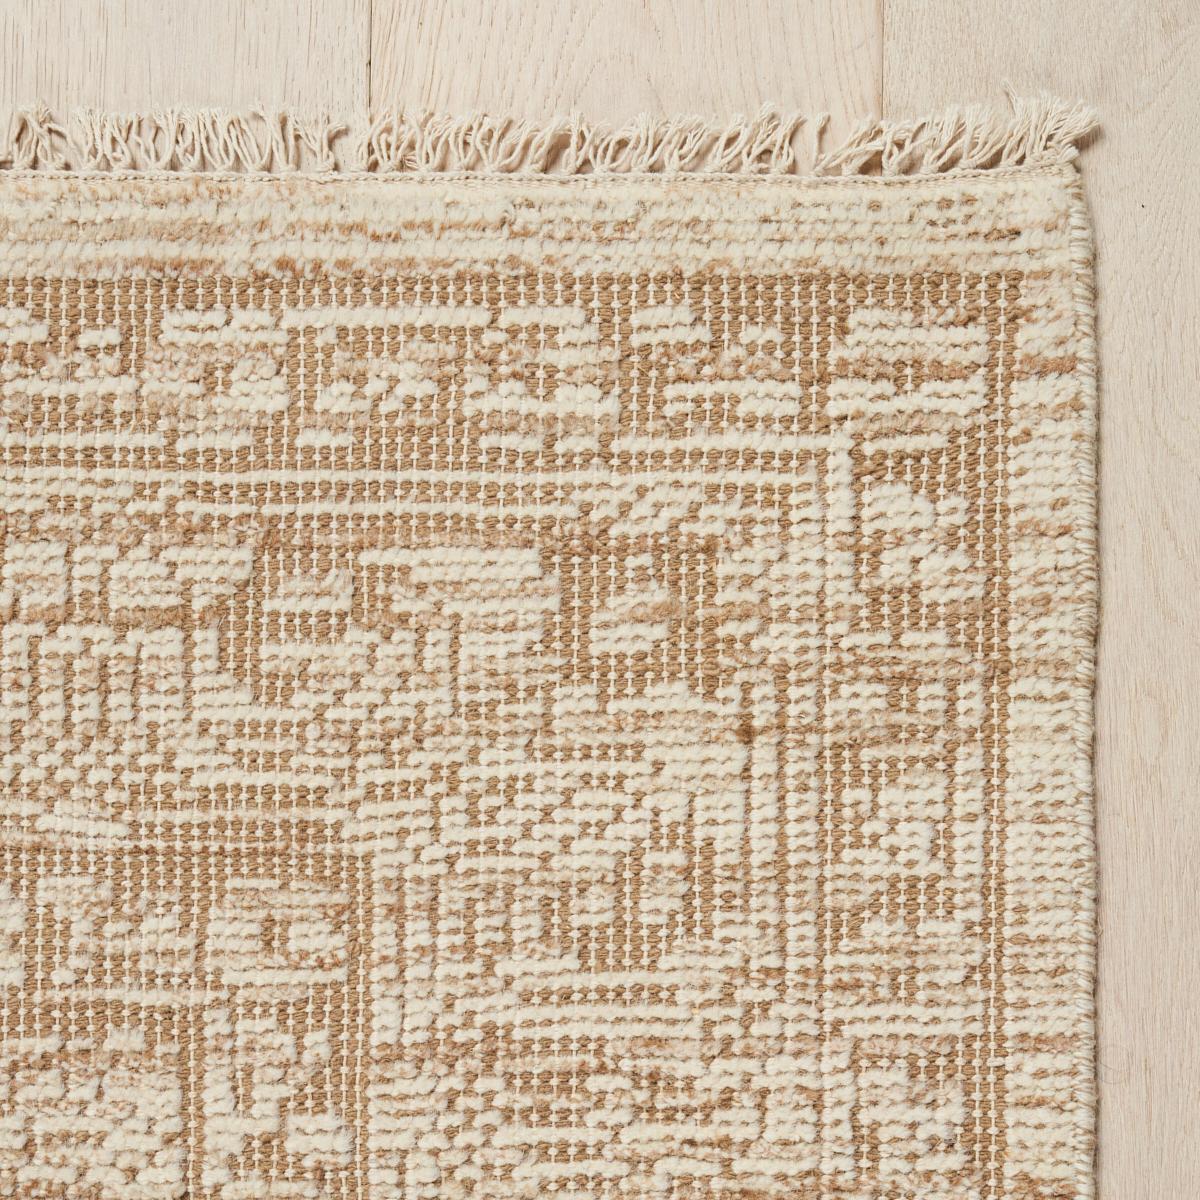 Notre tapis Ankara en laine nouée à la main est un modèle polyvalent de transition qui évoque les motifs complexes et les détails des bordures des tapis tribaux anciens. Fabriqué en laine douce à 100 %, ce tapis à la texture tonale ajoute un élément